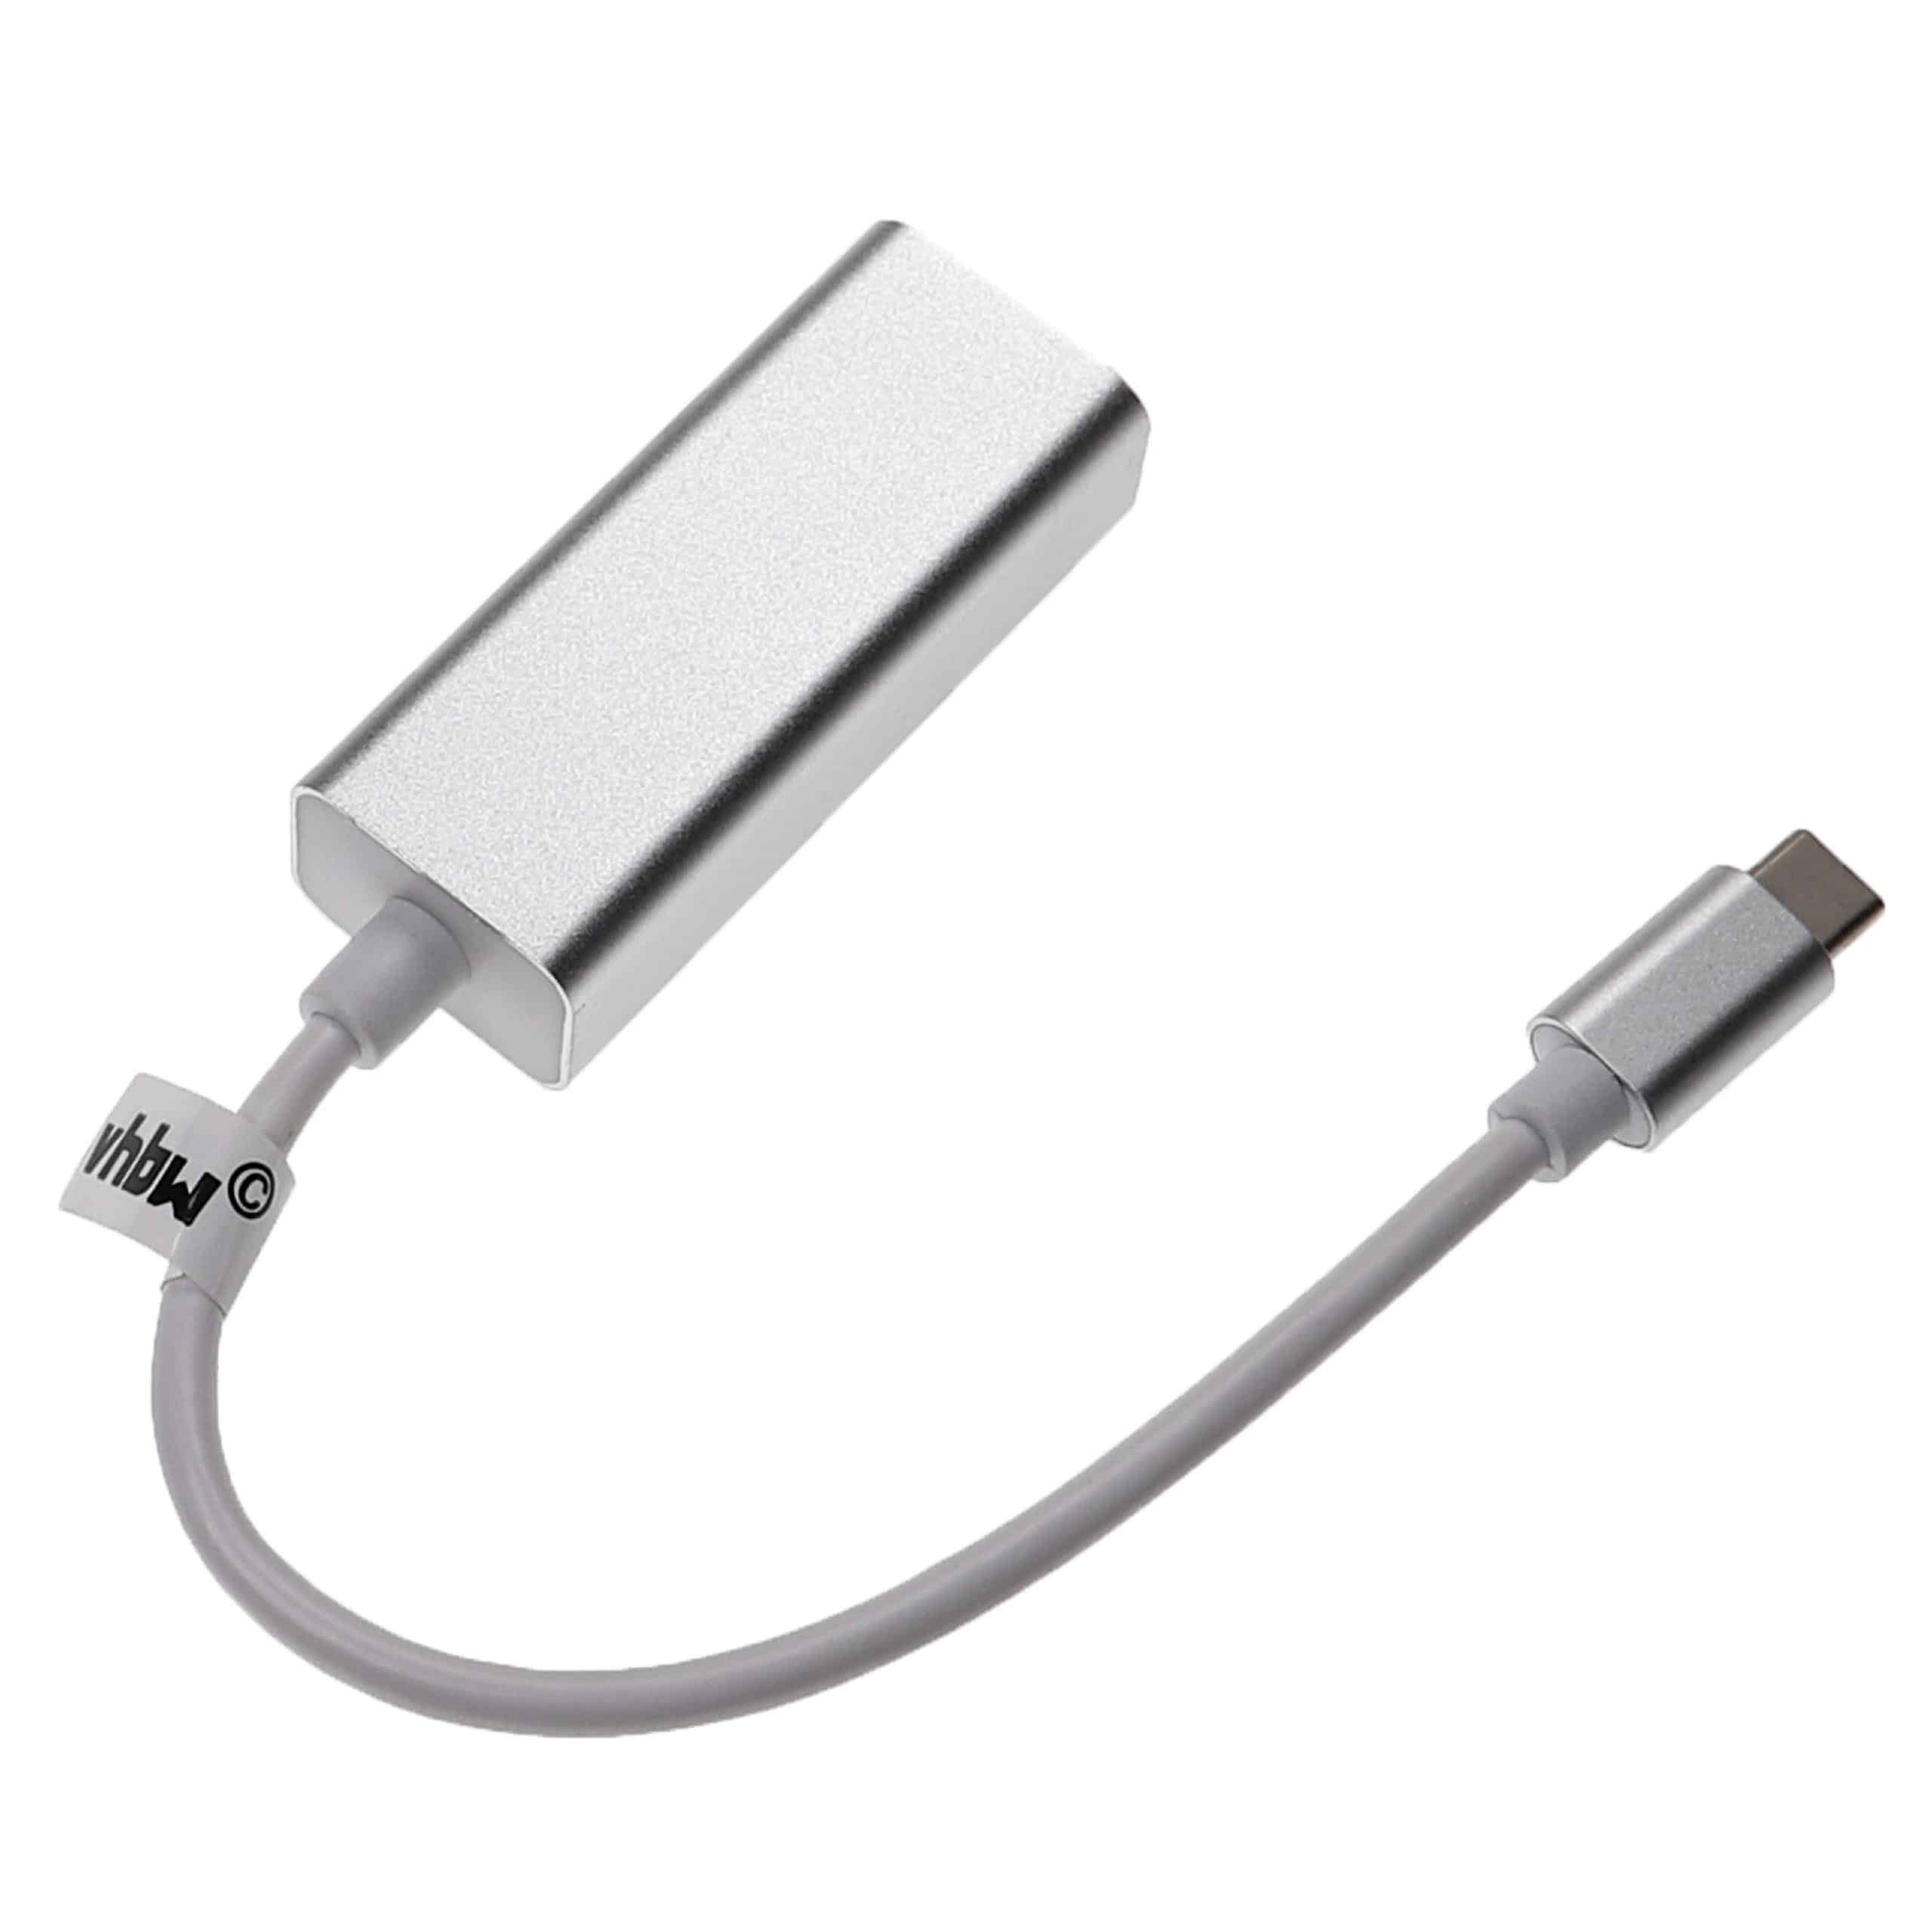 Adattatore Ethernet da USB-C (m) a RJ45 (f) per laptop, notebook, PC